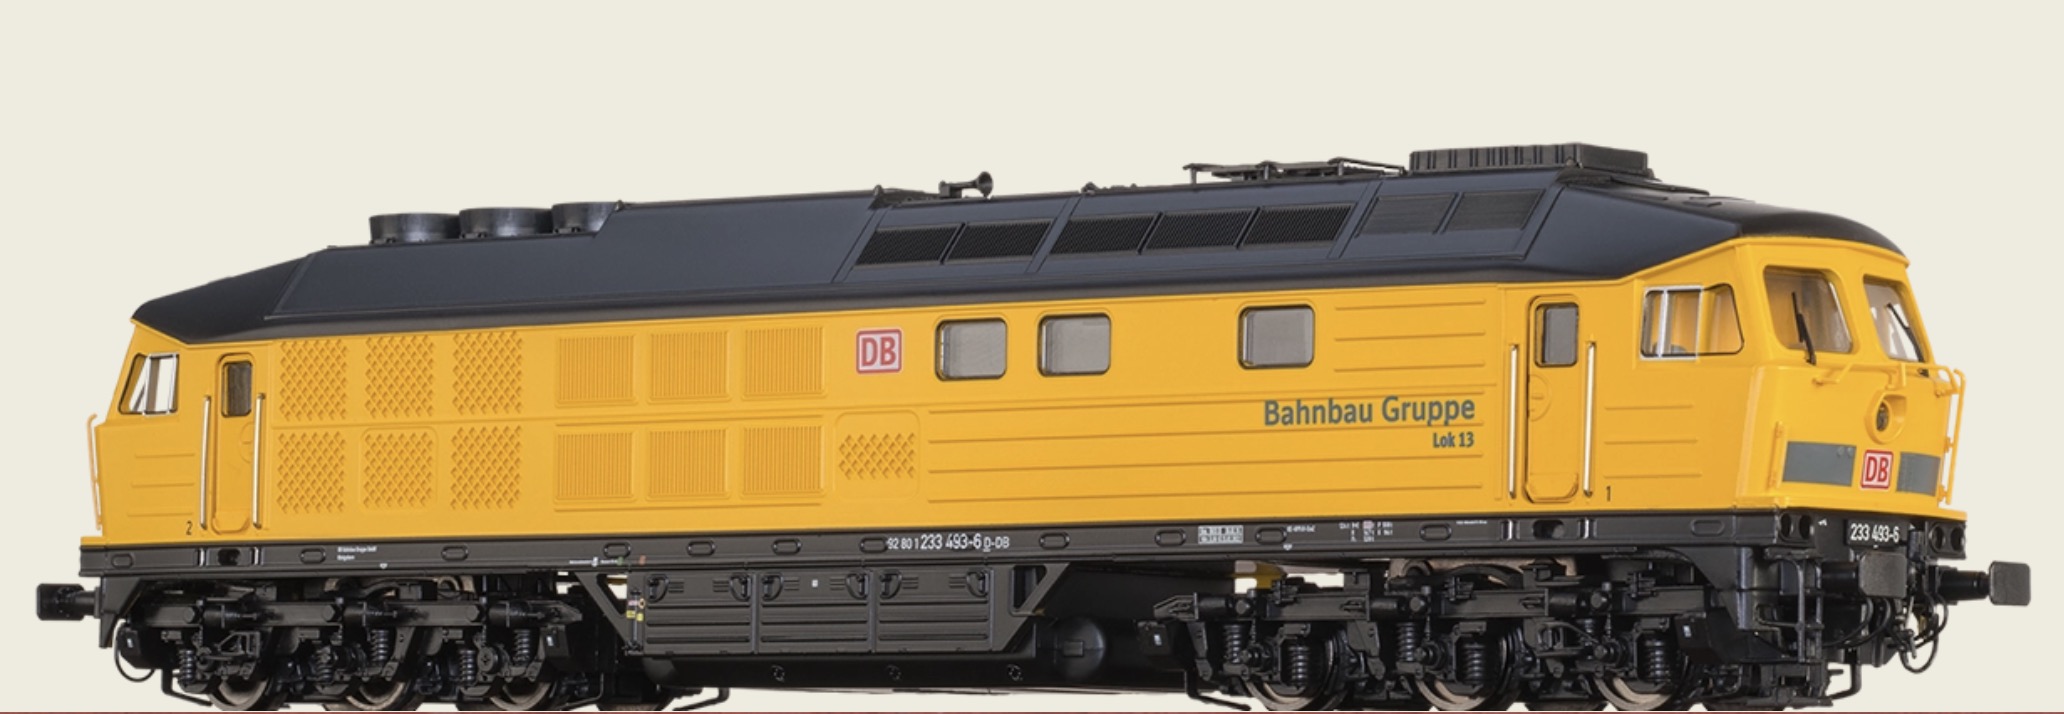 N Scale - Brawa - 61050 - Locomotive, Diesel, DB 233 - Deutsche Bahn - 233 493-6